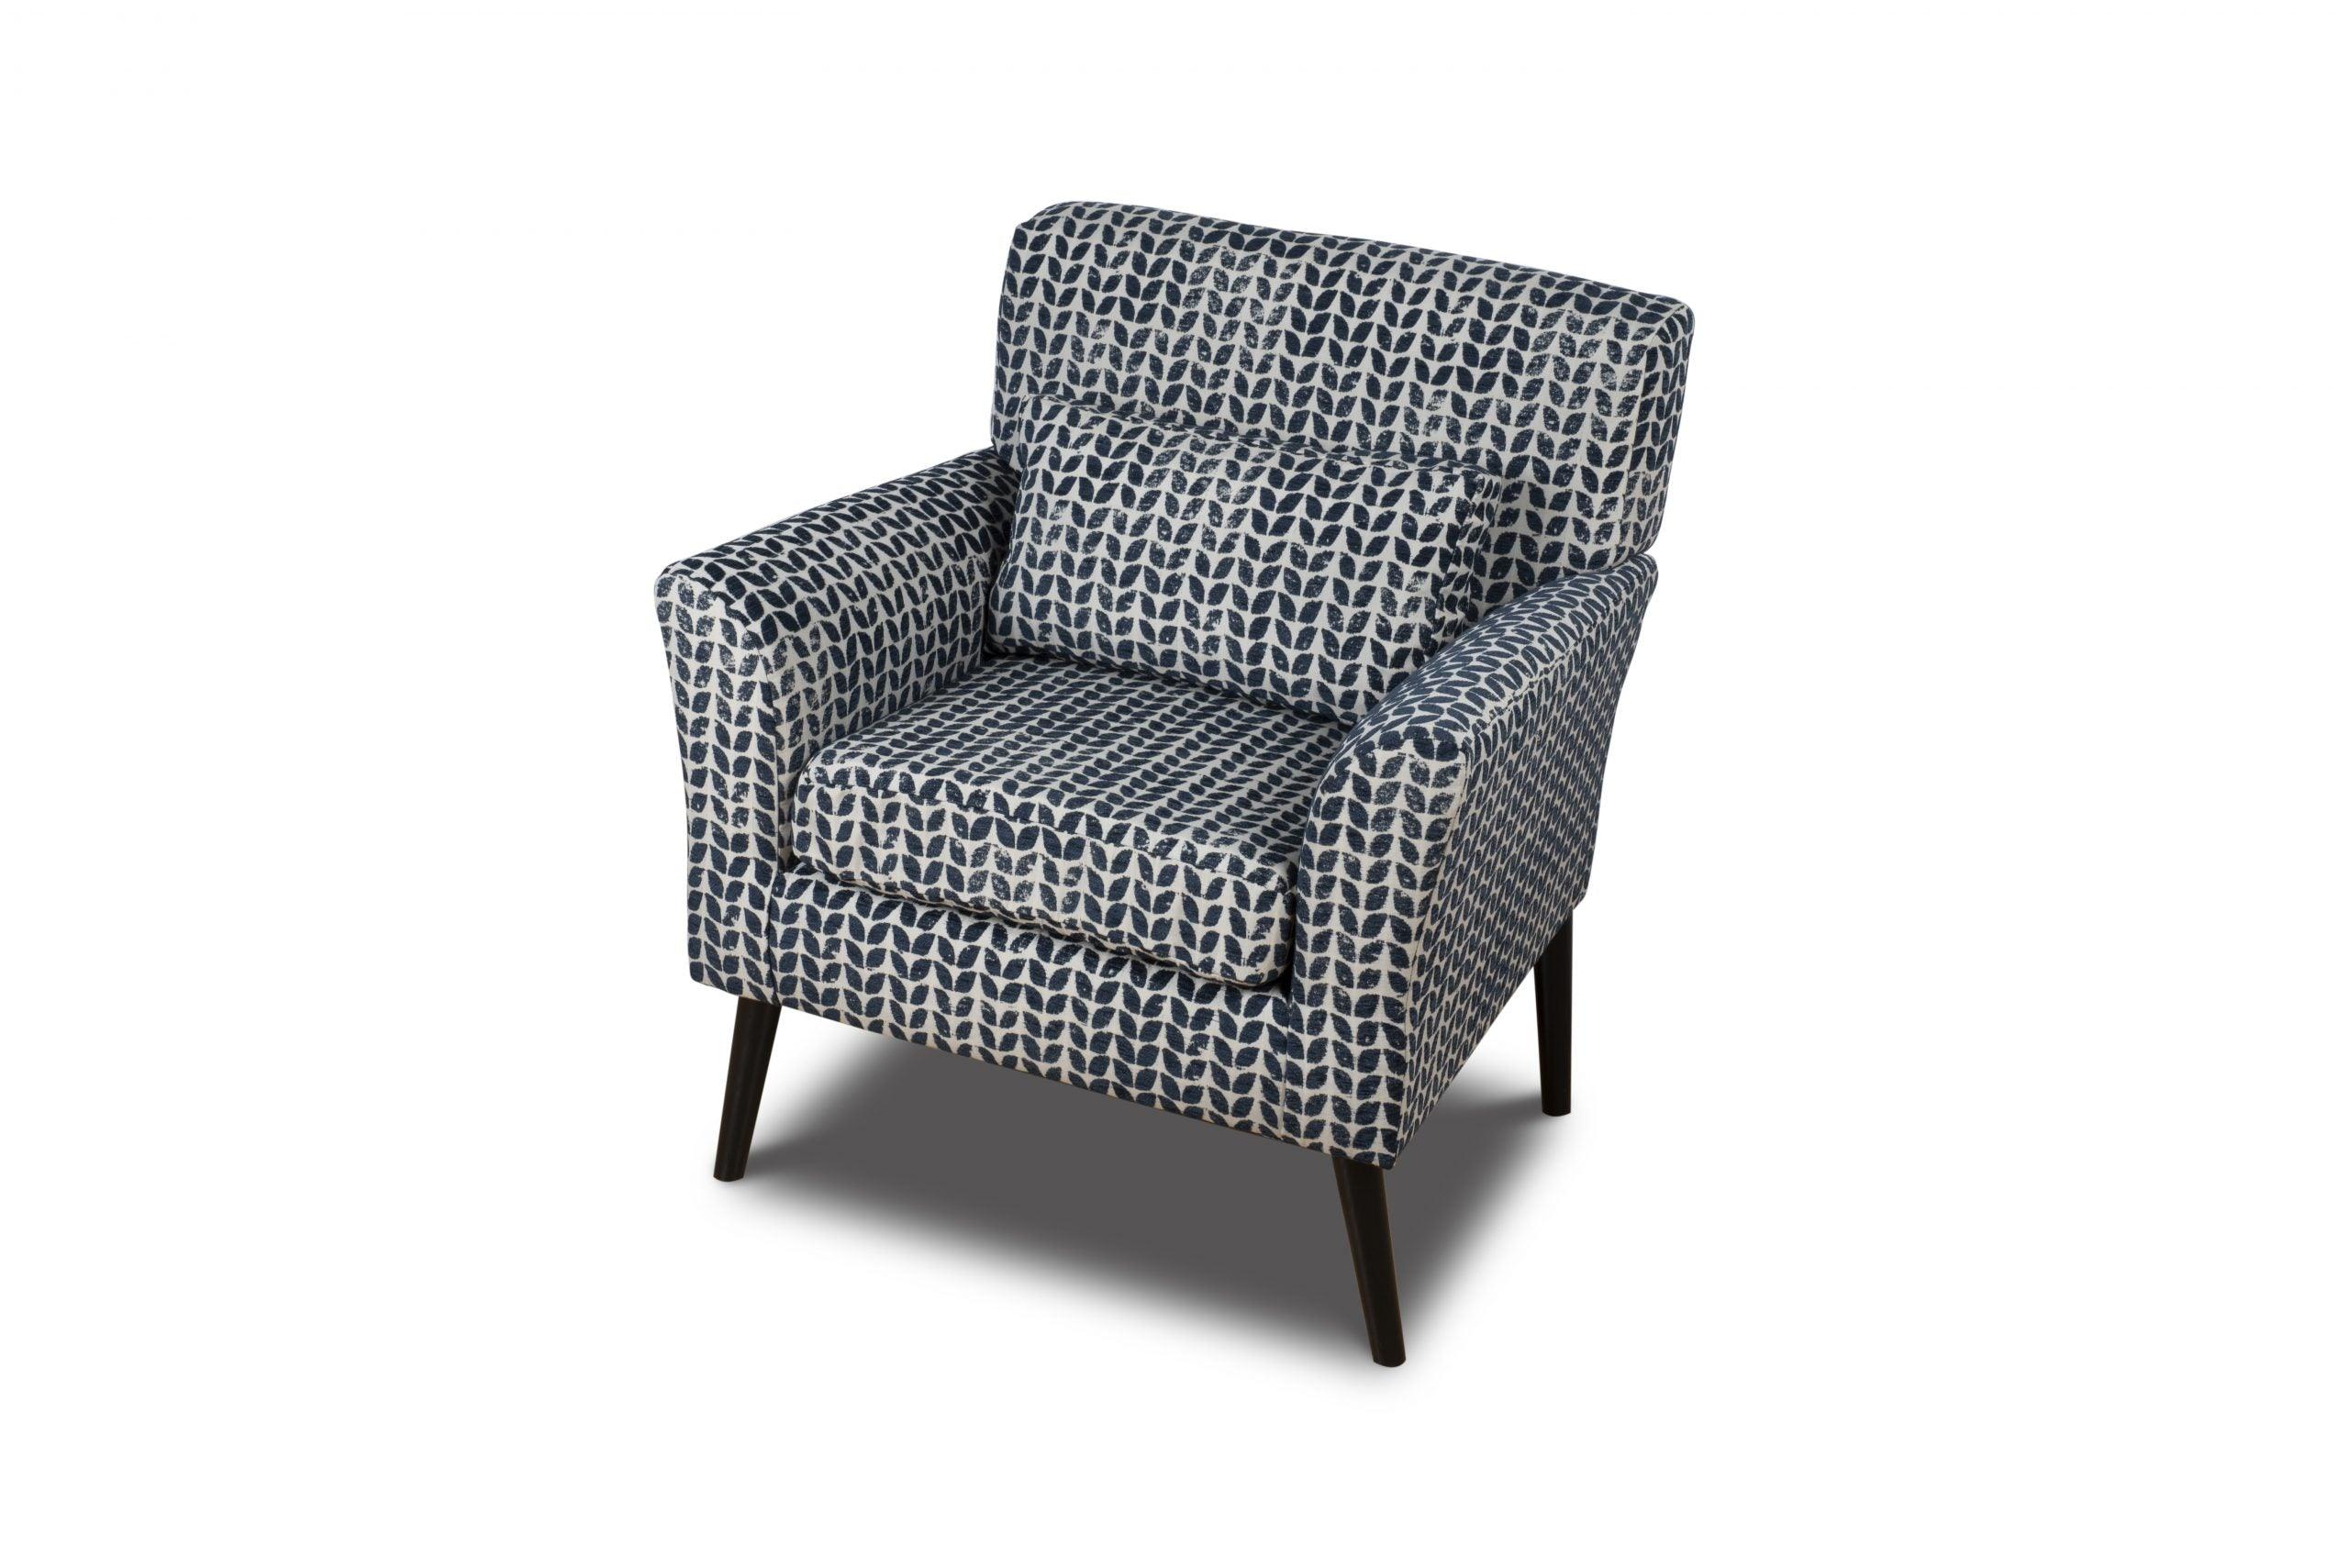 Warnborough Club Chair - Blue by DI Designs - Maison Rêves UK